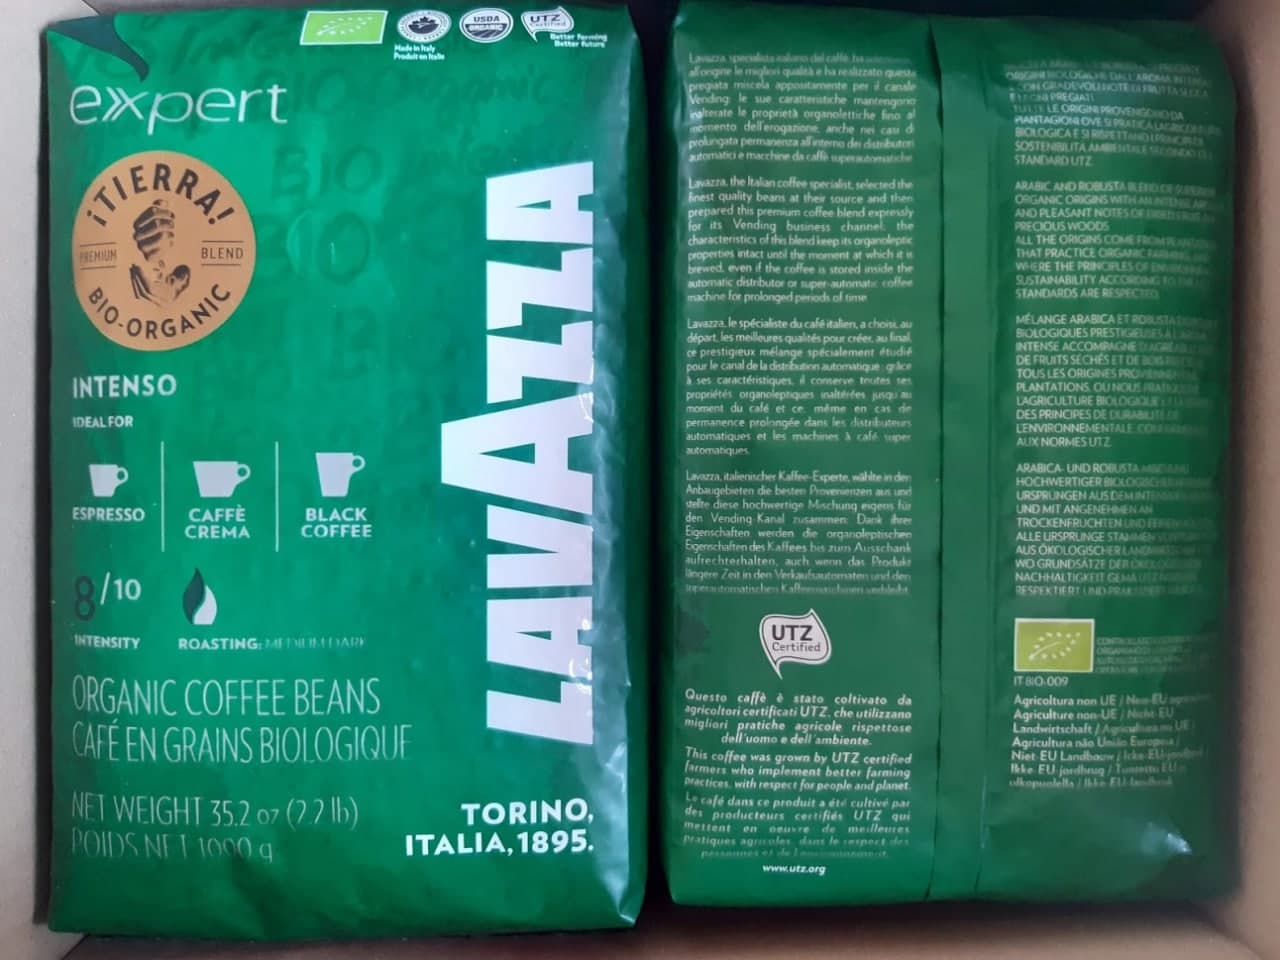 Pupiņu kafija "LAVAZZA" Expert ¡Tierra! Bio Organic Intenso